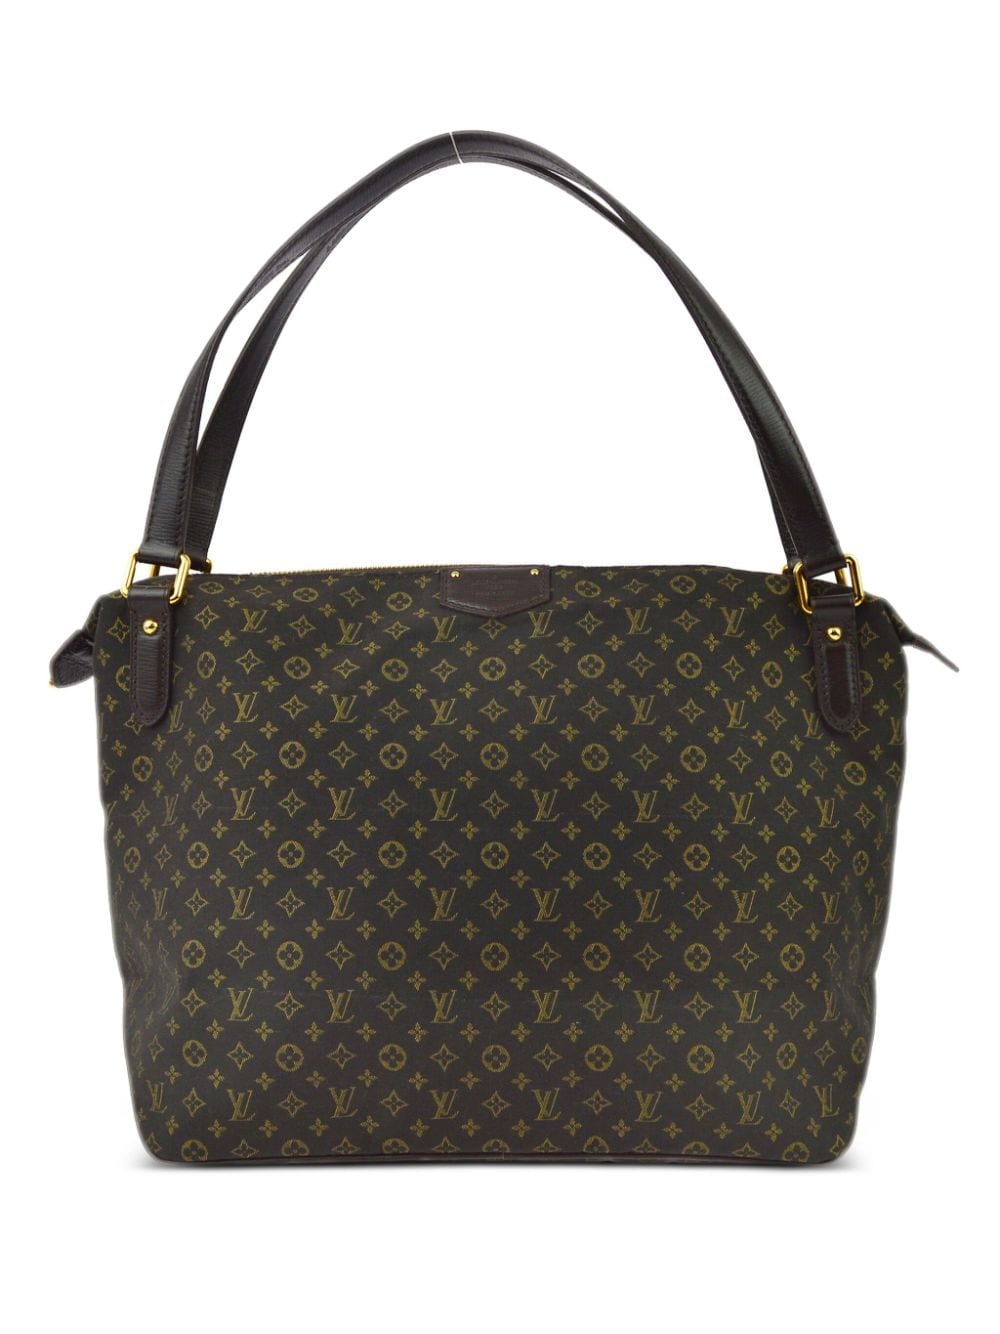 Image 1 of Louis Vuitton Pre-Owned 2012 Ballade MM handbag